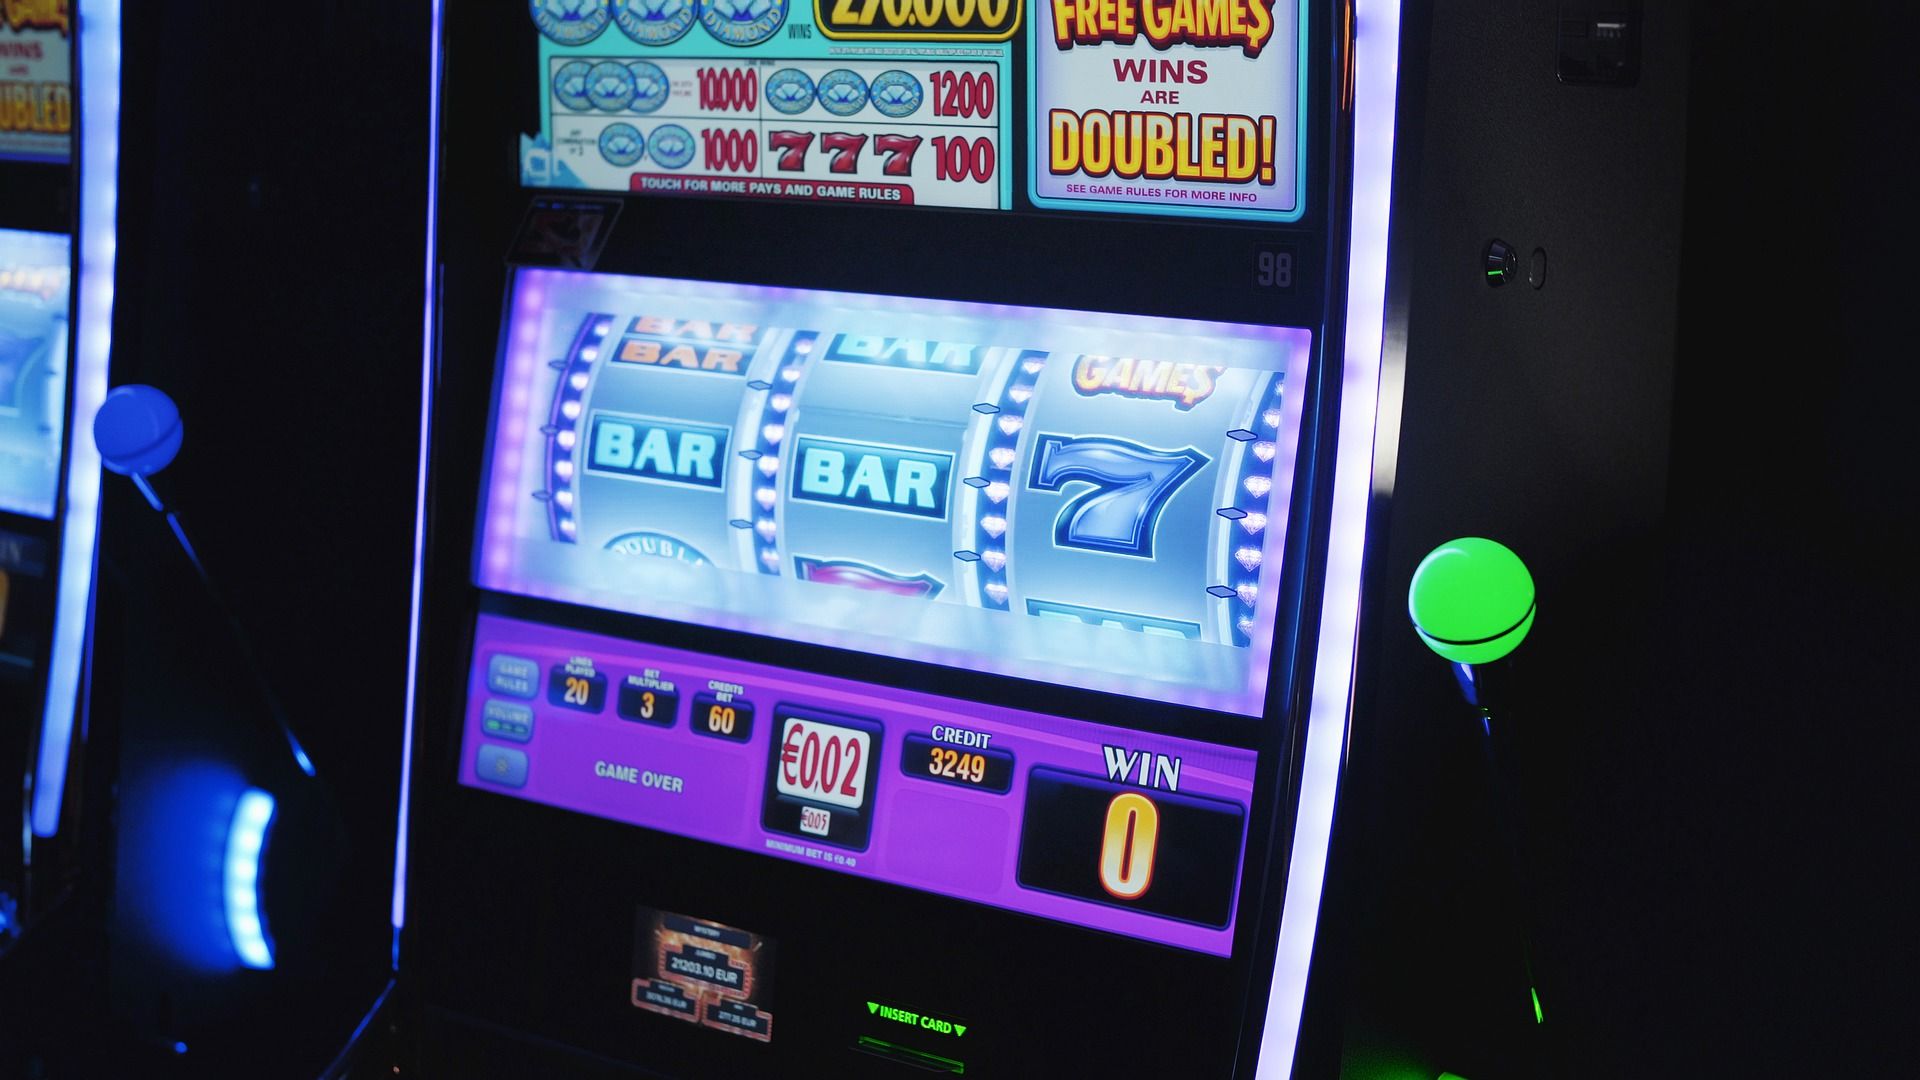 Pin-up casino скачать бесплатно